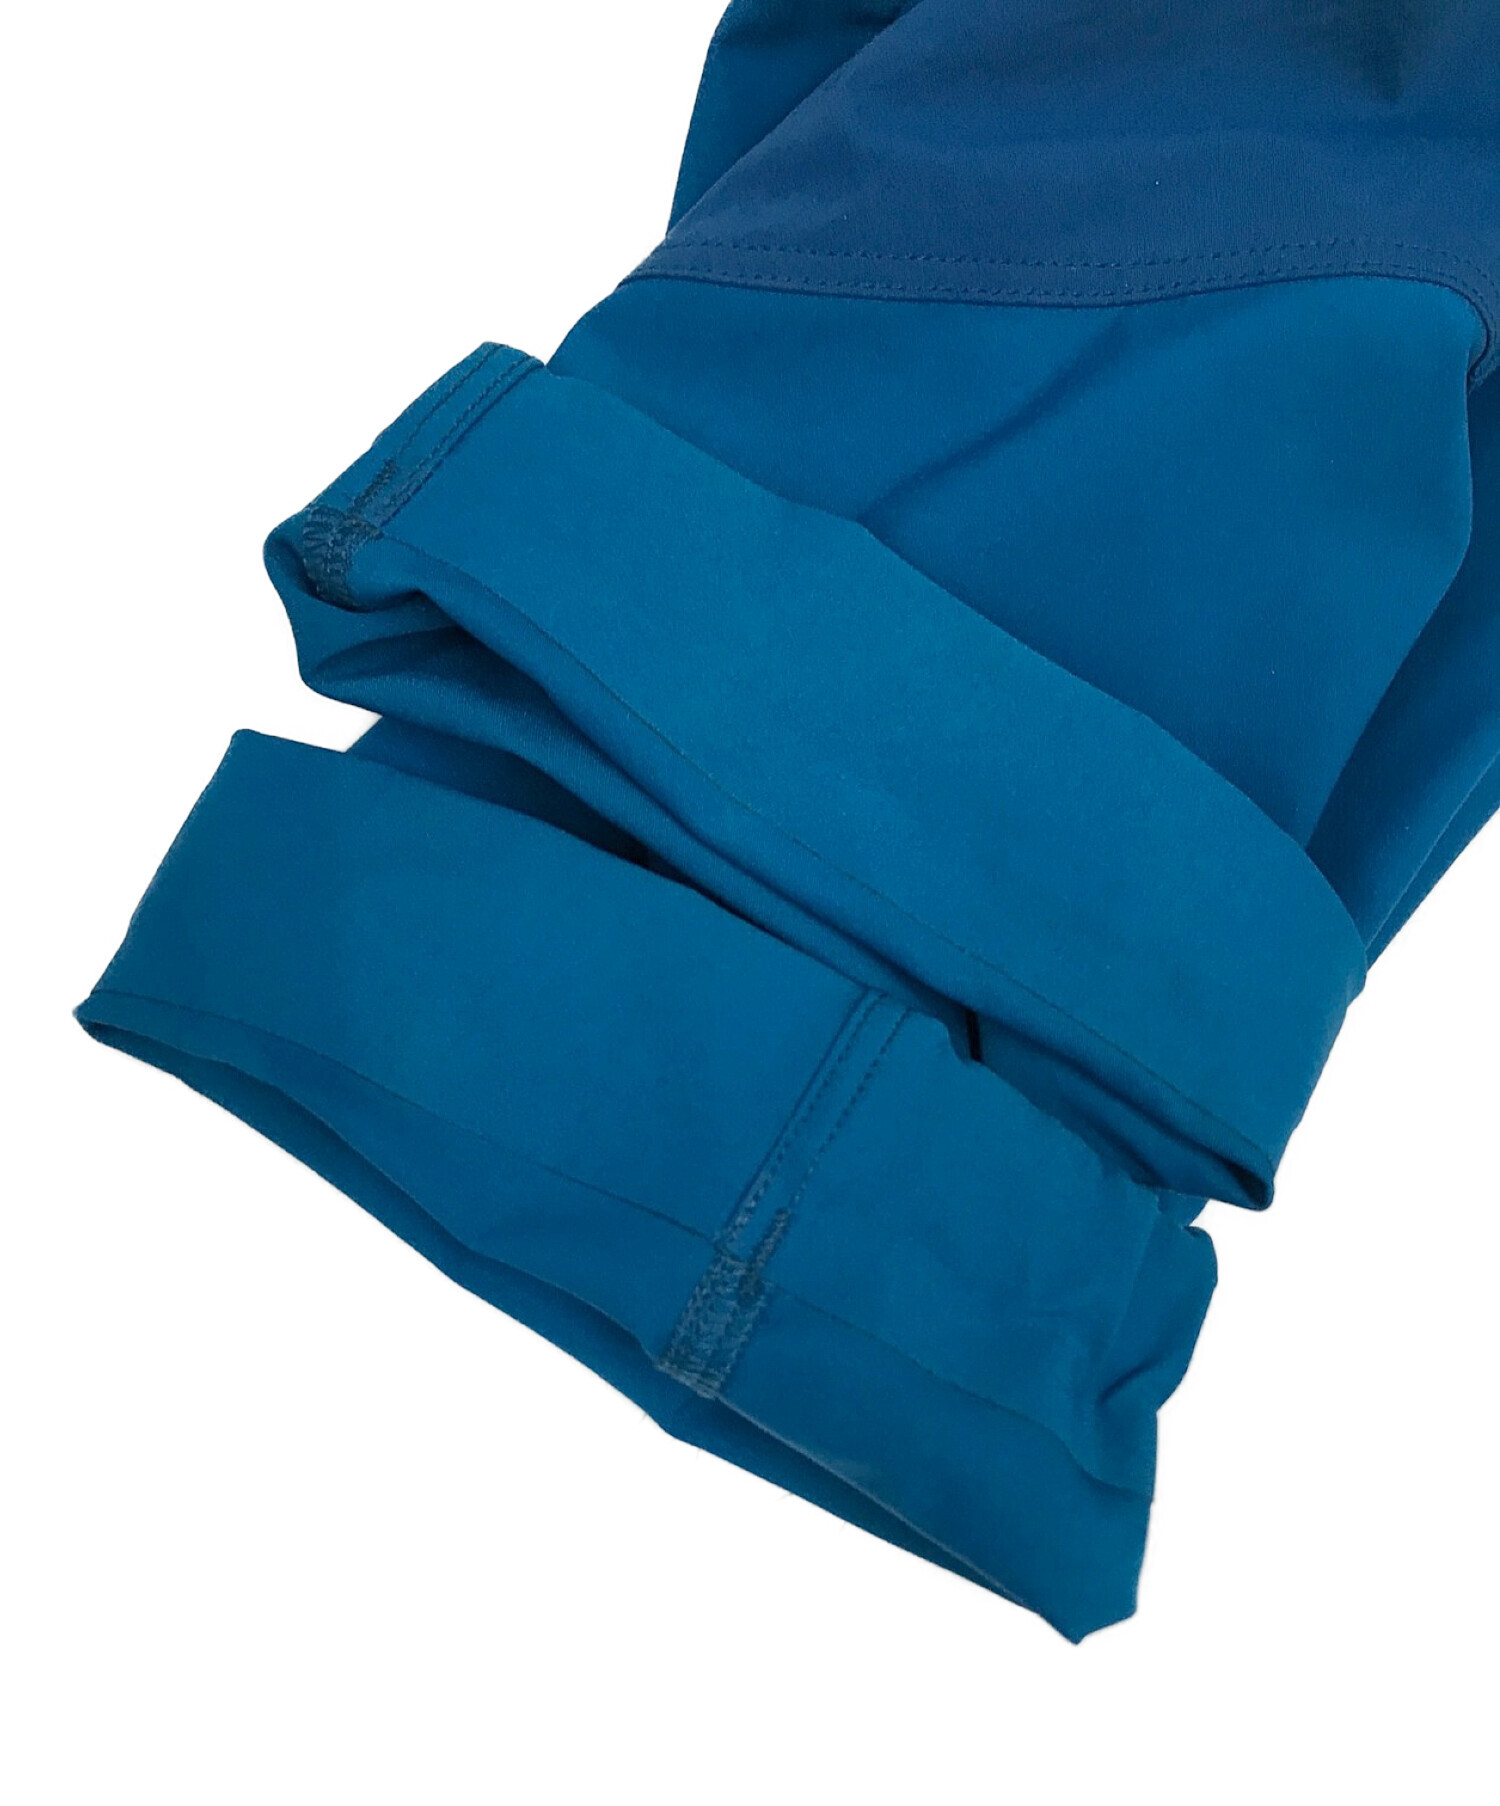 ARC'TERYX (アークテリクス) ナイロンジャケット ブルー サイズ:S